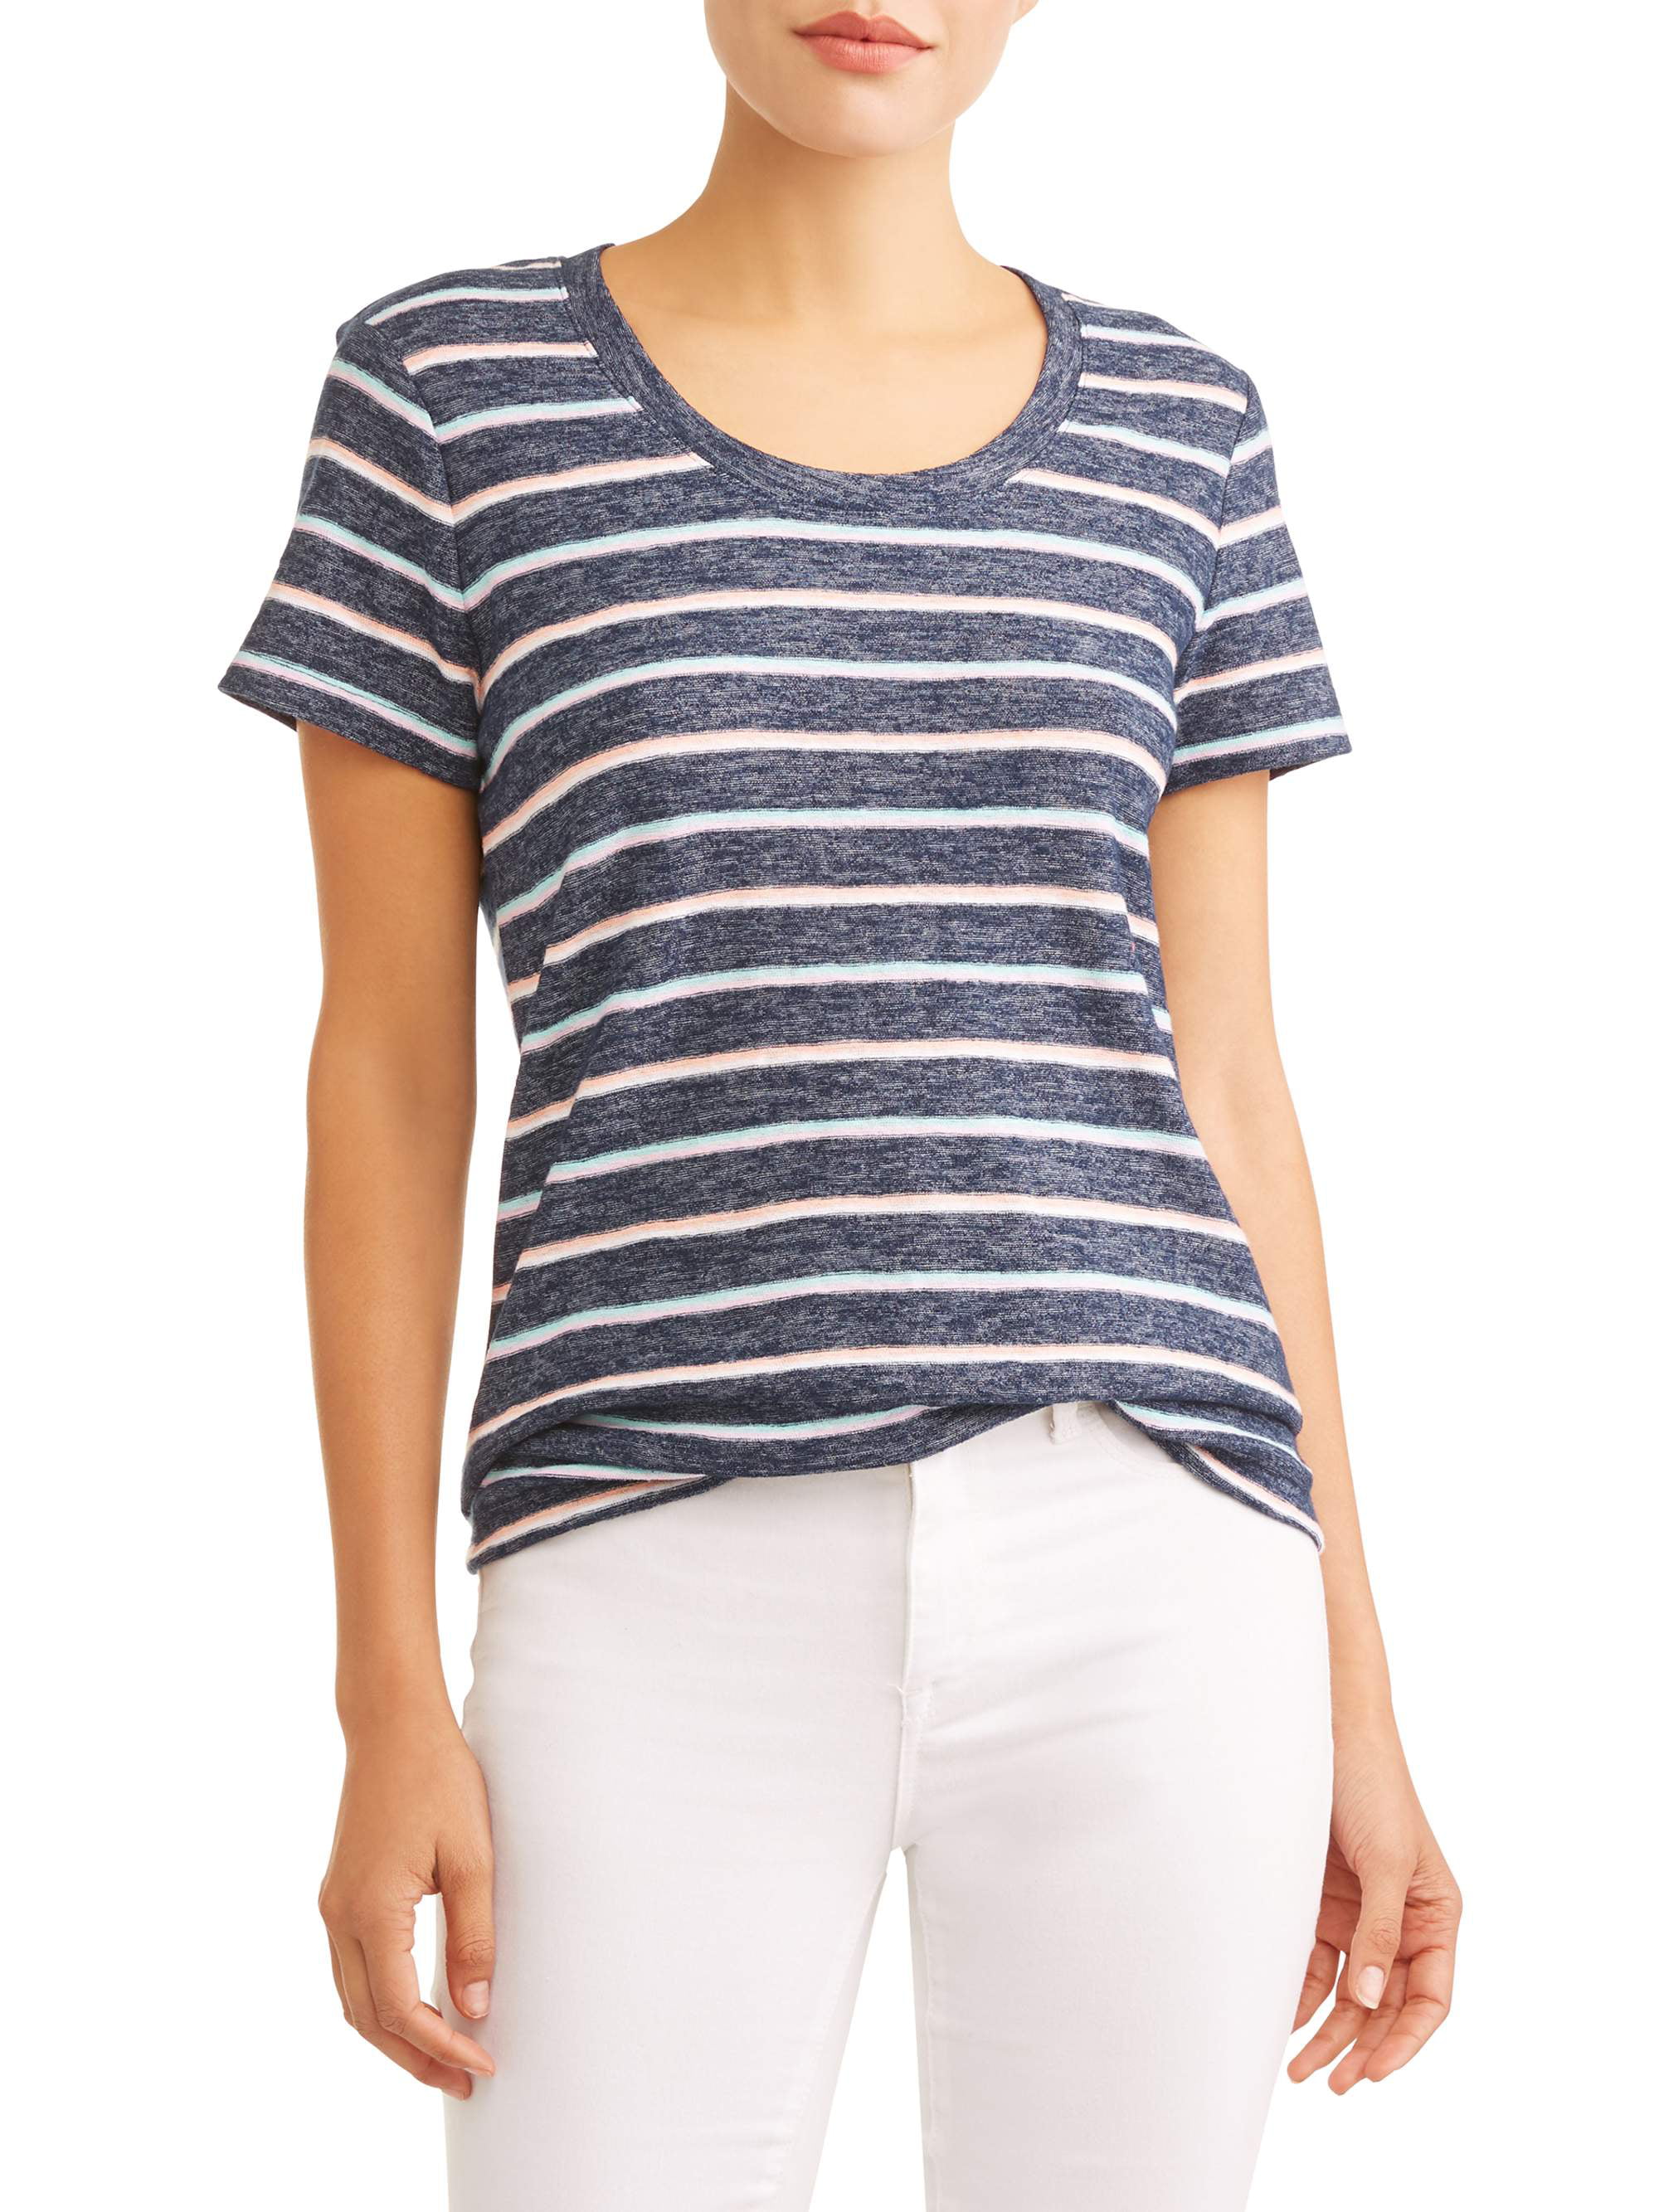 Women's Short Sleeve Striped T-Shirt - Walmart.com